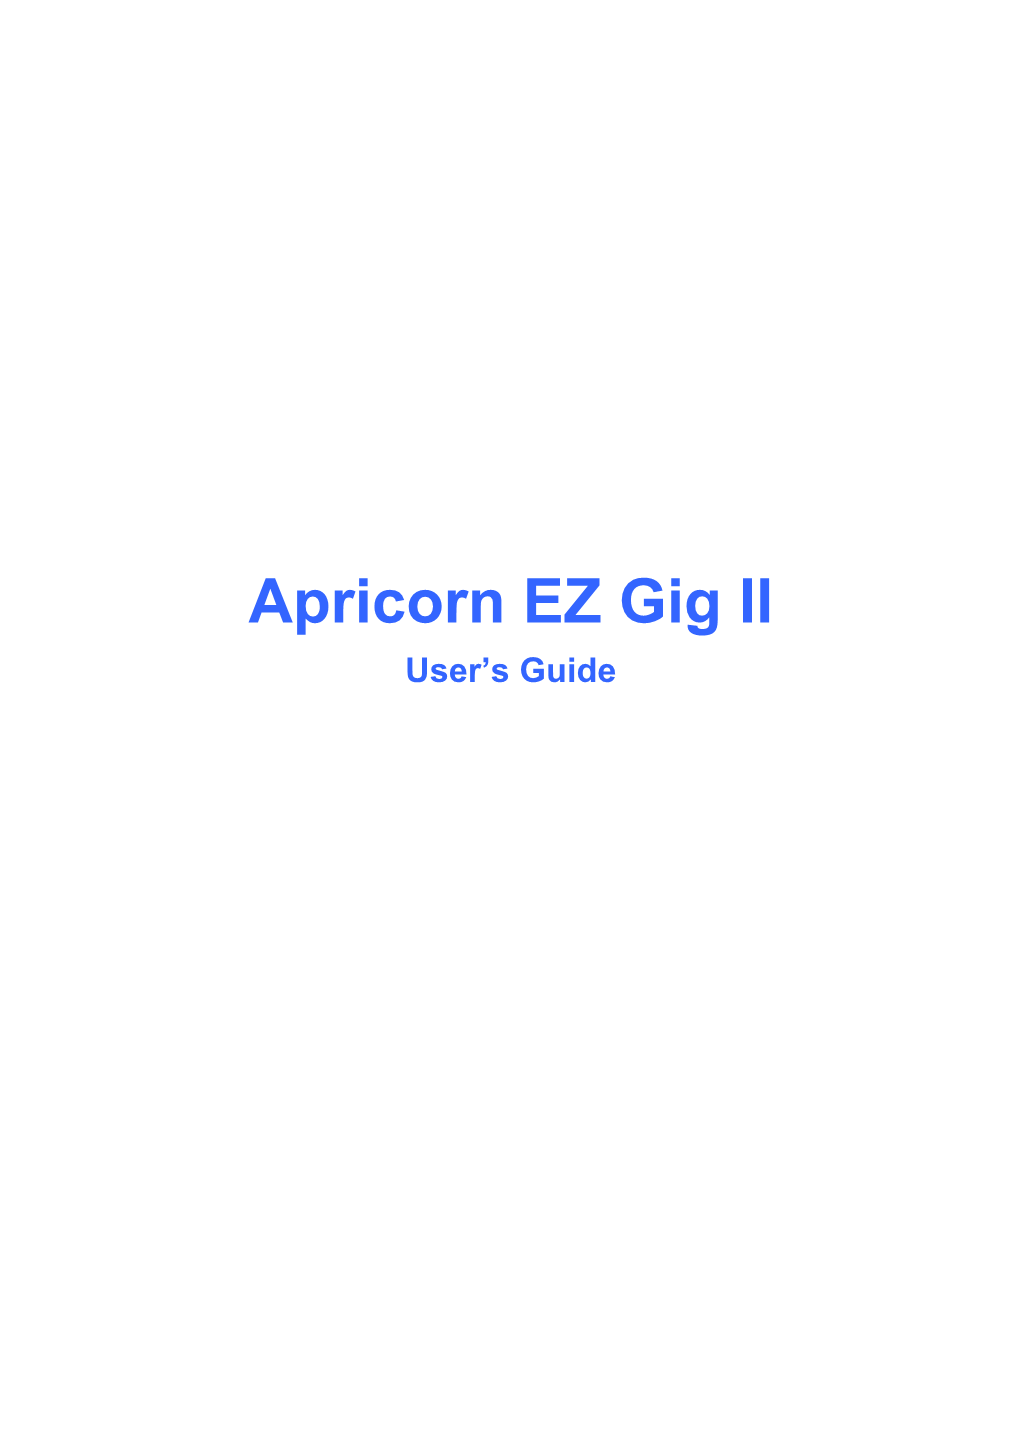 Apricorn EZ Gig II User's Guide